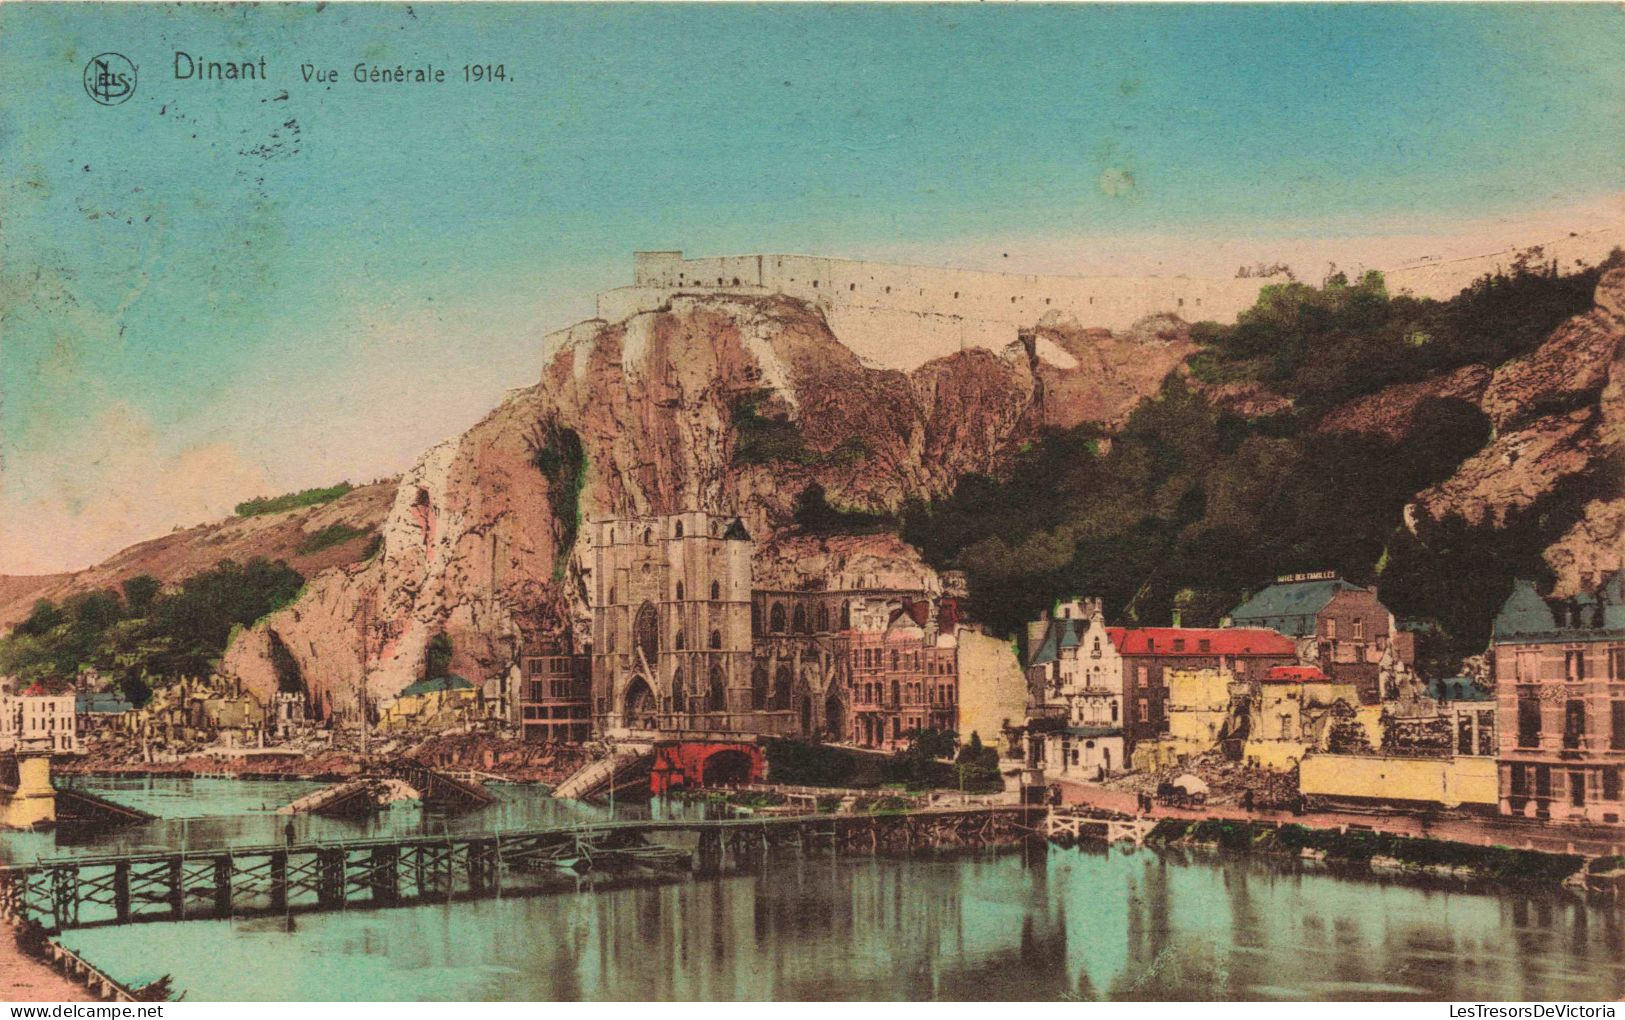 BELGIQUE - Dinant - Vue Générale 1914 - Colorisé - Carte Postale Ancienne - Dinant